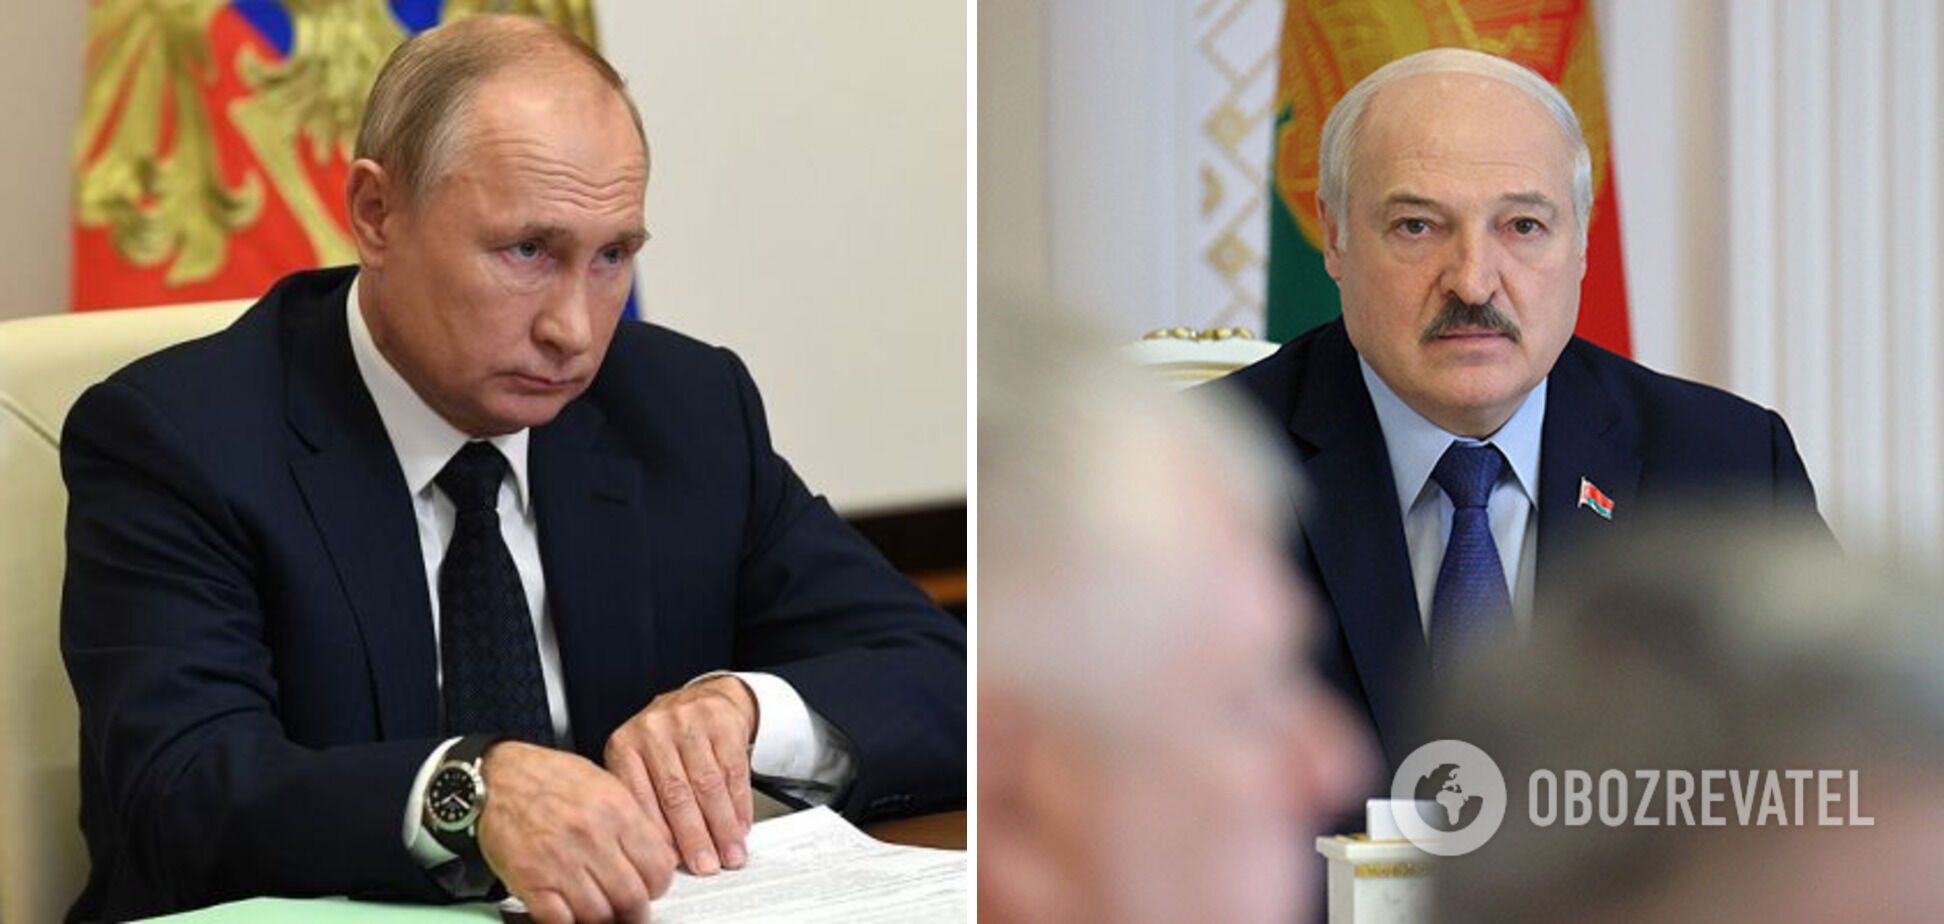 Абсолютное большинство украинцев негативно относятся к Путину и Лукашенко